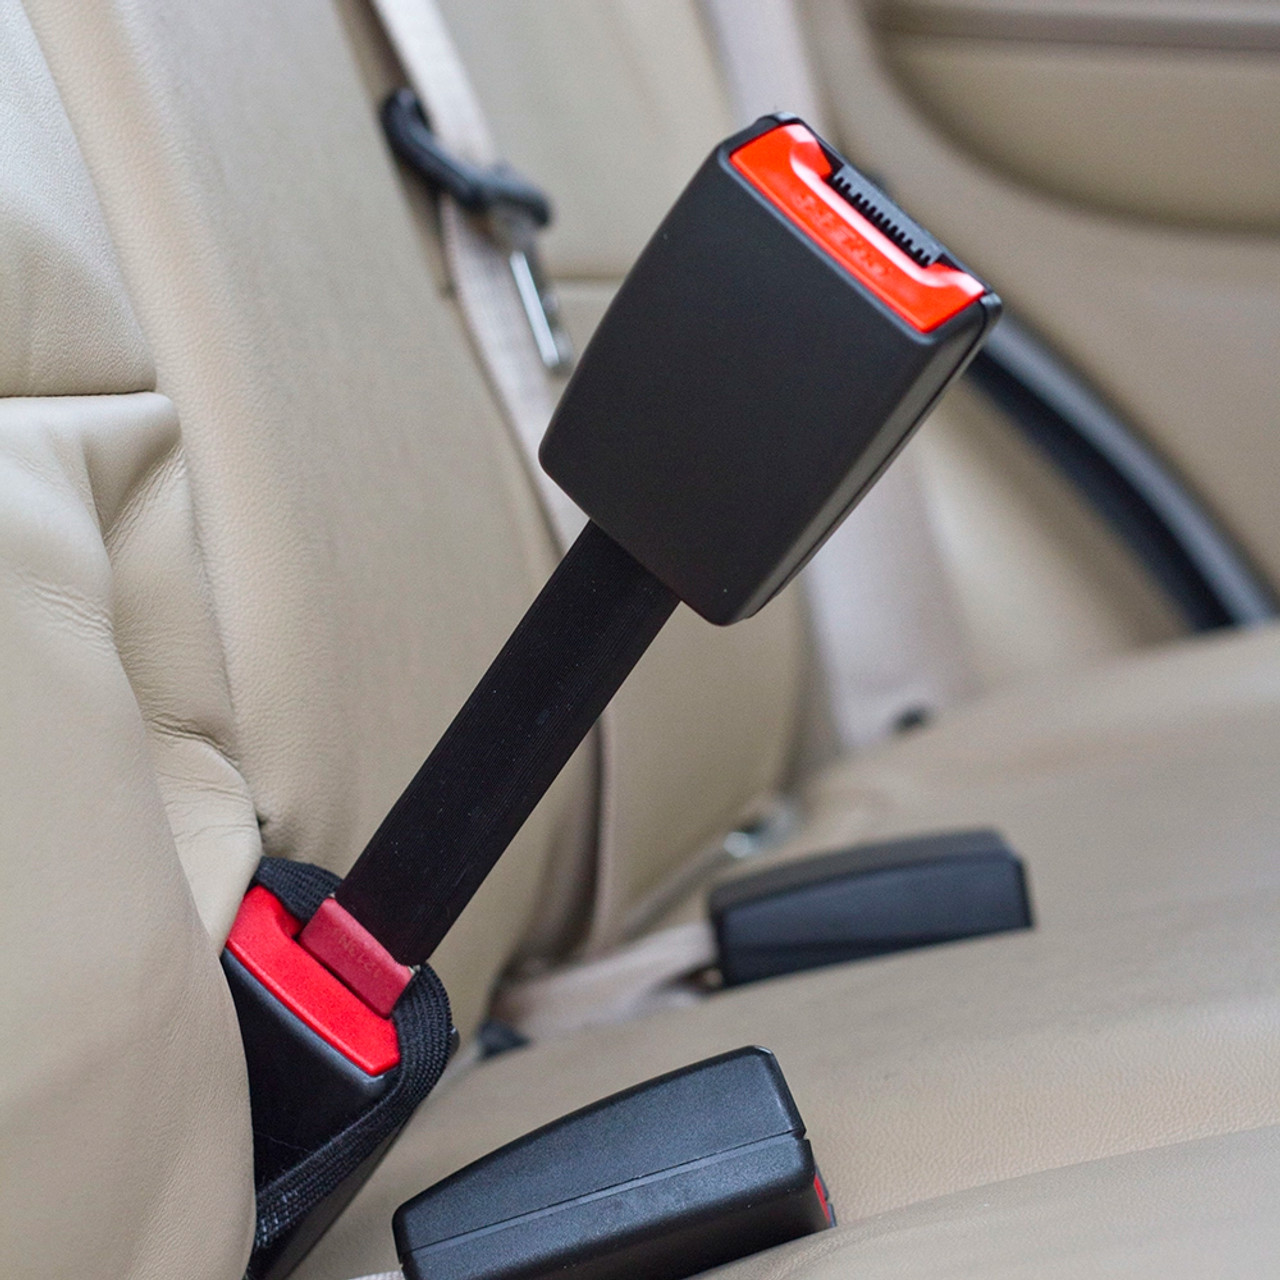 Orion Car Seat Belt Extender - Multi Function Safety Belt Extension - Webre